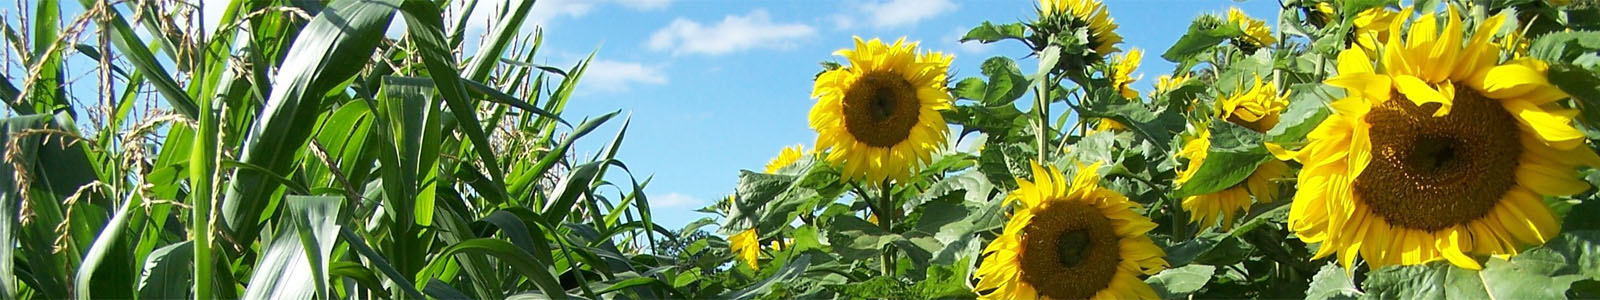 Sonnenblumen und Maispflanzen ©DLR